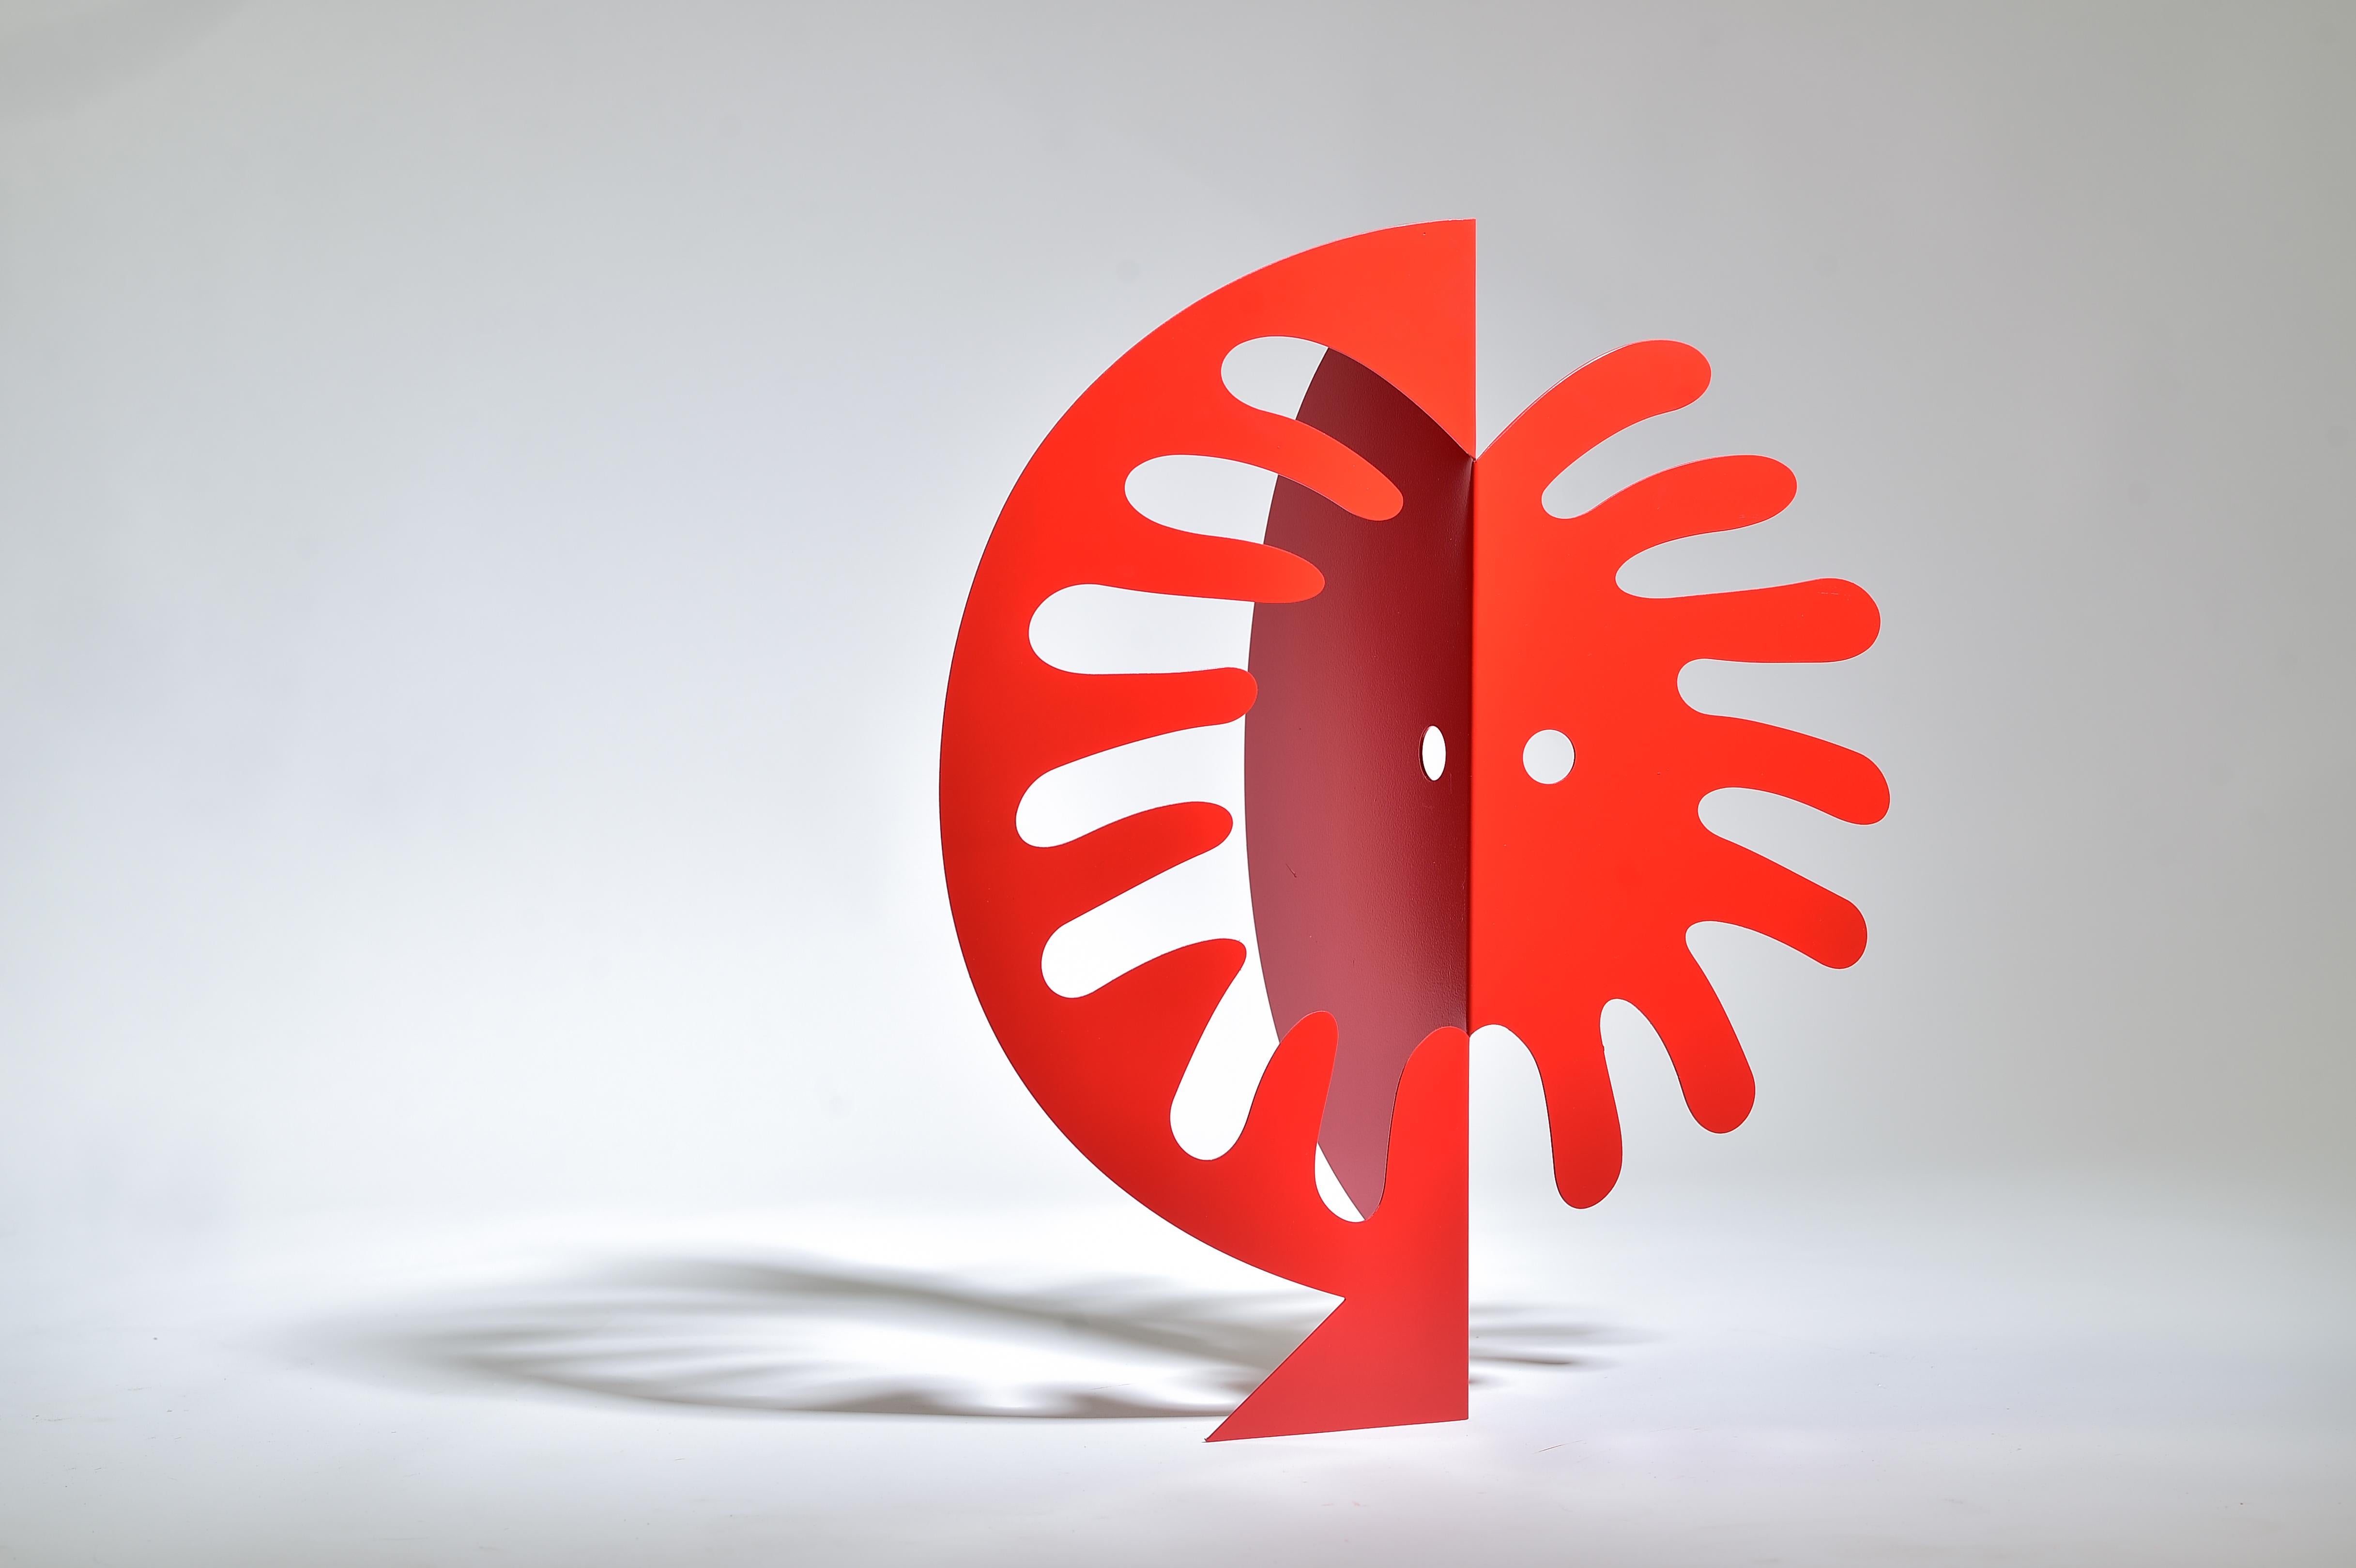 Esta escultura figurativa abstracta de Gal Melnick pertenece a su último conjunto de obras. Se trata de una escultura de metal cortada con láser y pintada con pintura de automoción, que forma parte de una edición de 6 ejemplares.
Viene firmada y